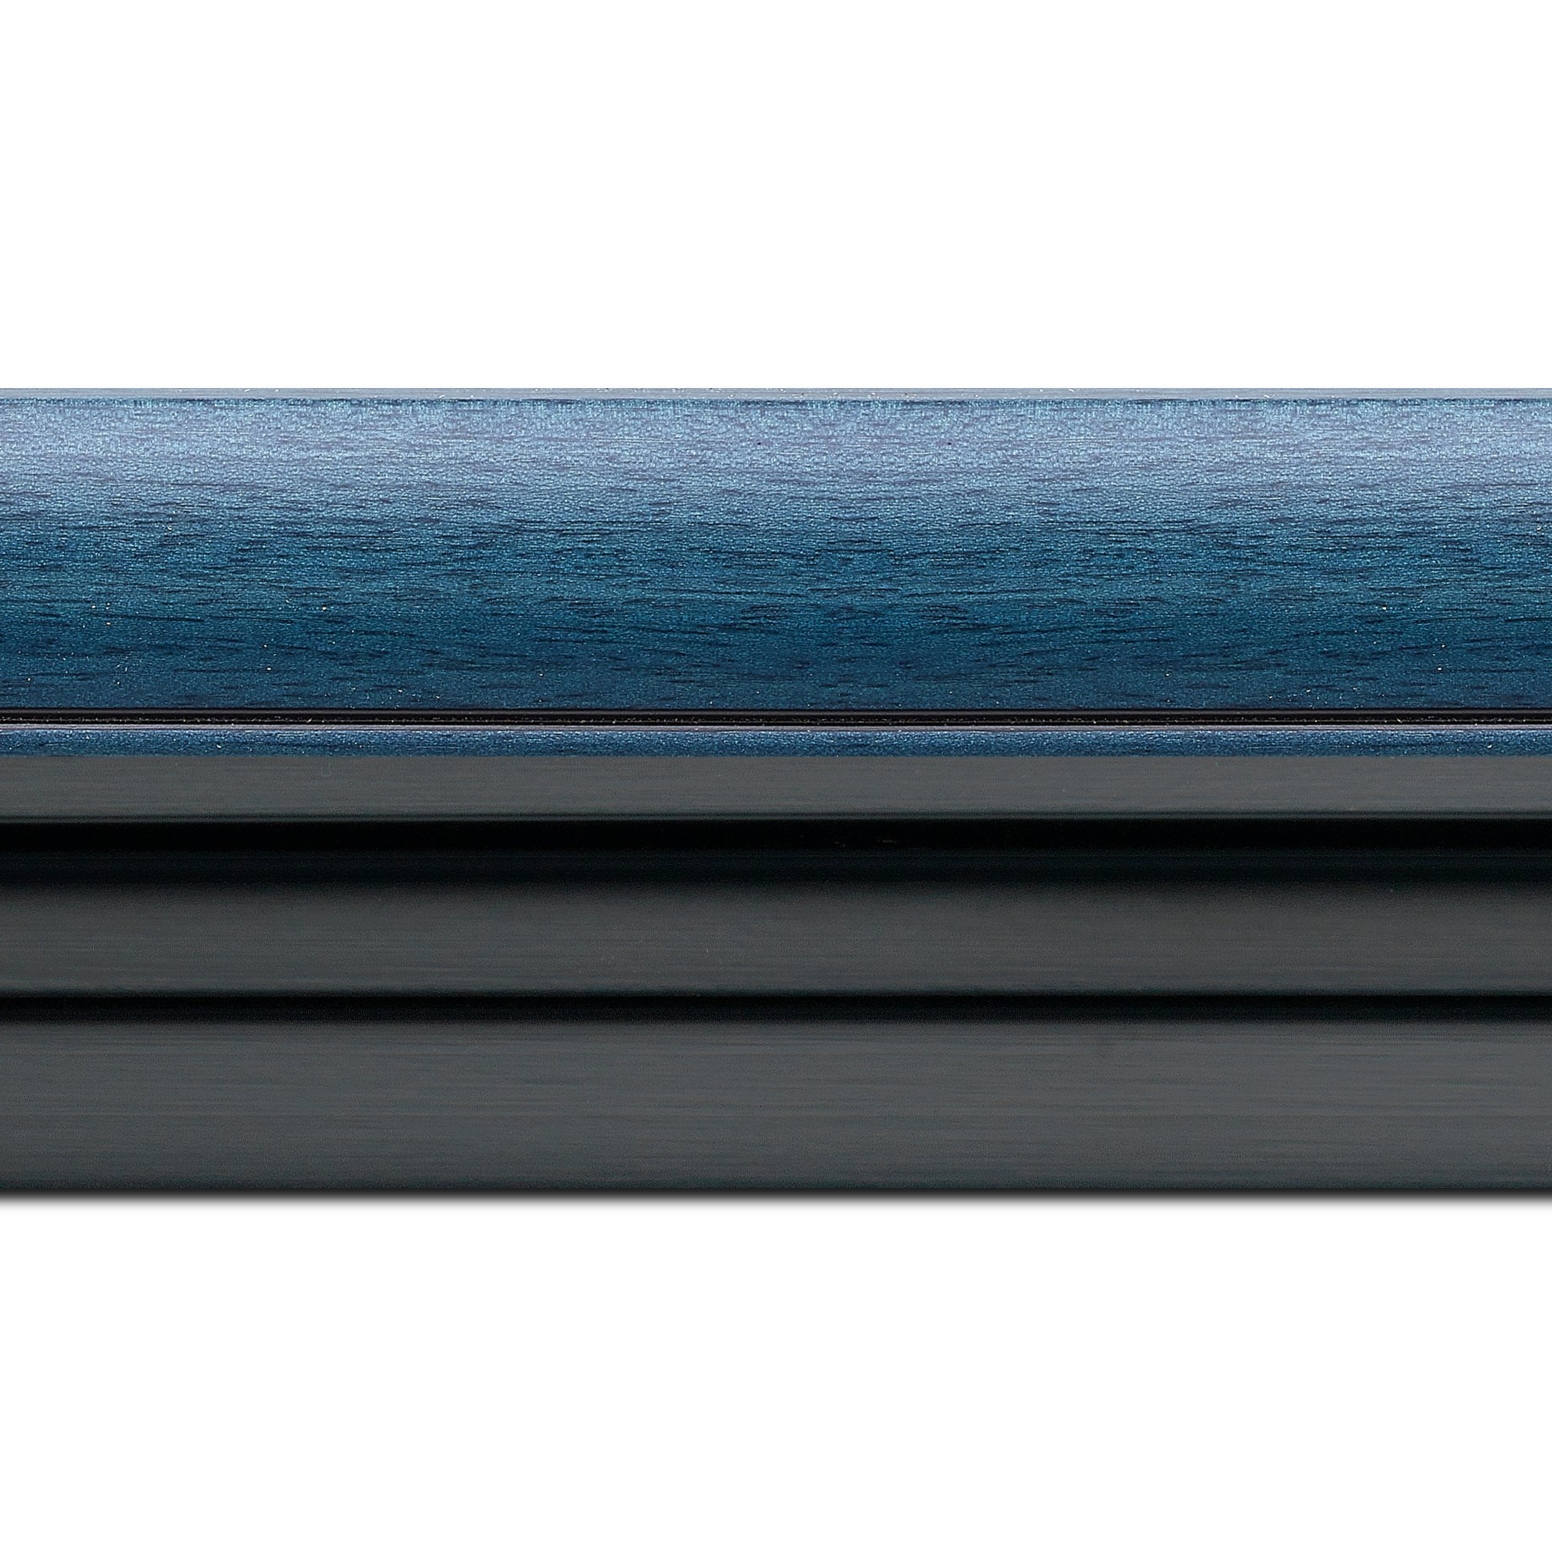 Caisse américaine pour peintures  americaine bois bleu noir — 84.1 x 118.9